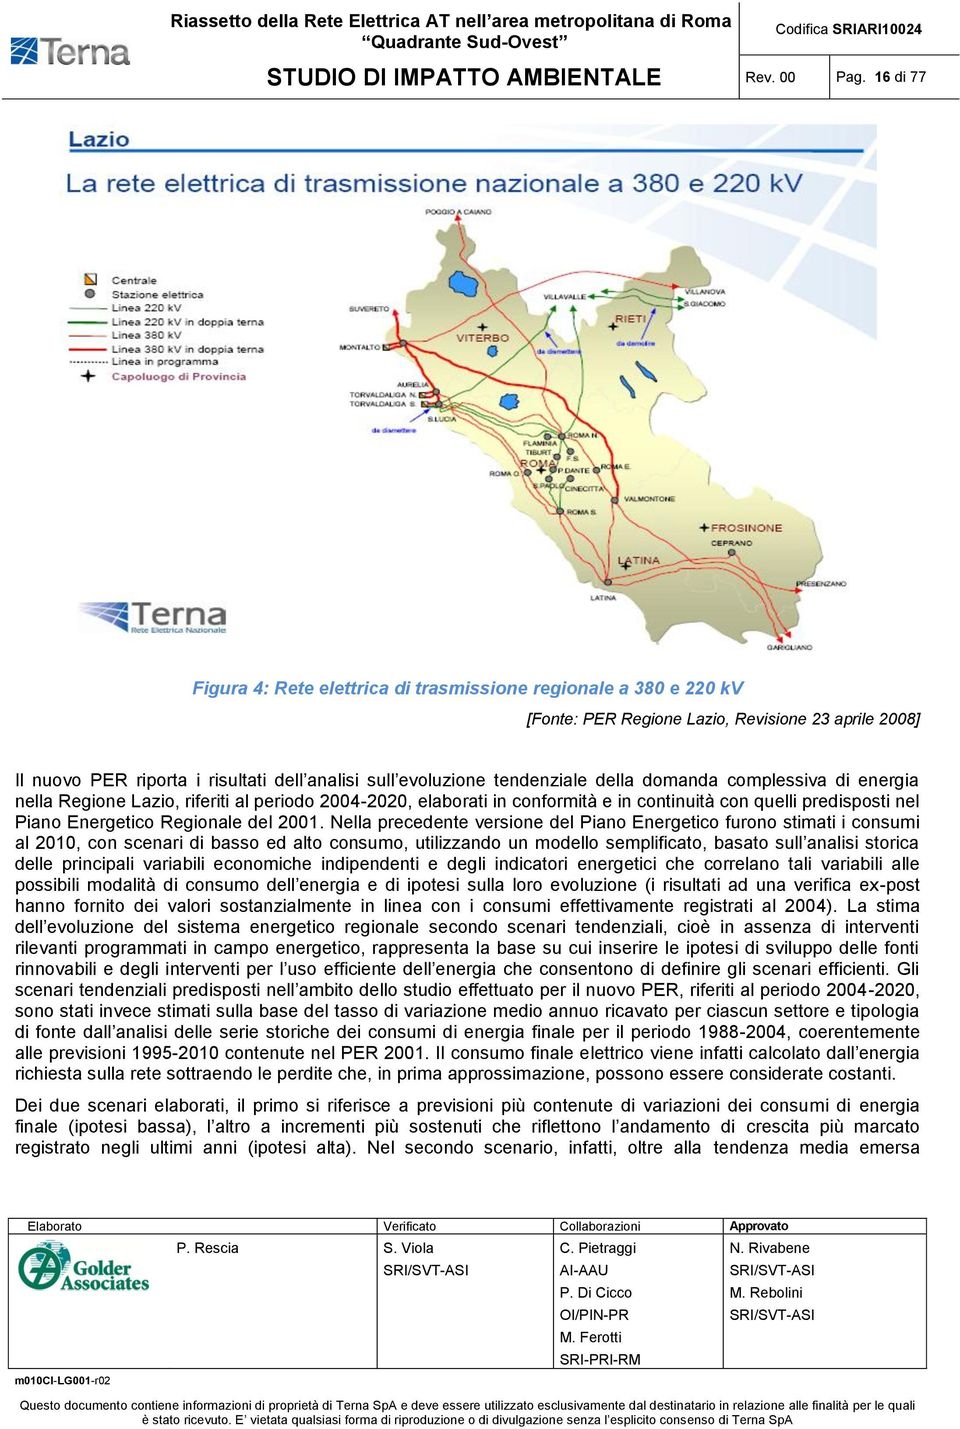 tendenziale della domanda complessiva di energia nella Regione Lazio, riferiti al periodo 2004-2020, elaborati in conformità e in continuità con quelli predisposti nel Piano Energetico Regionale del